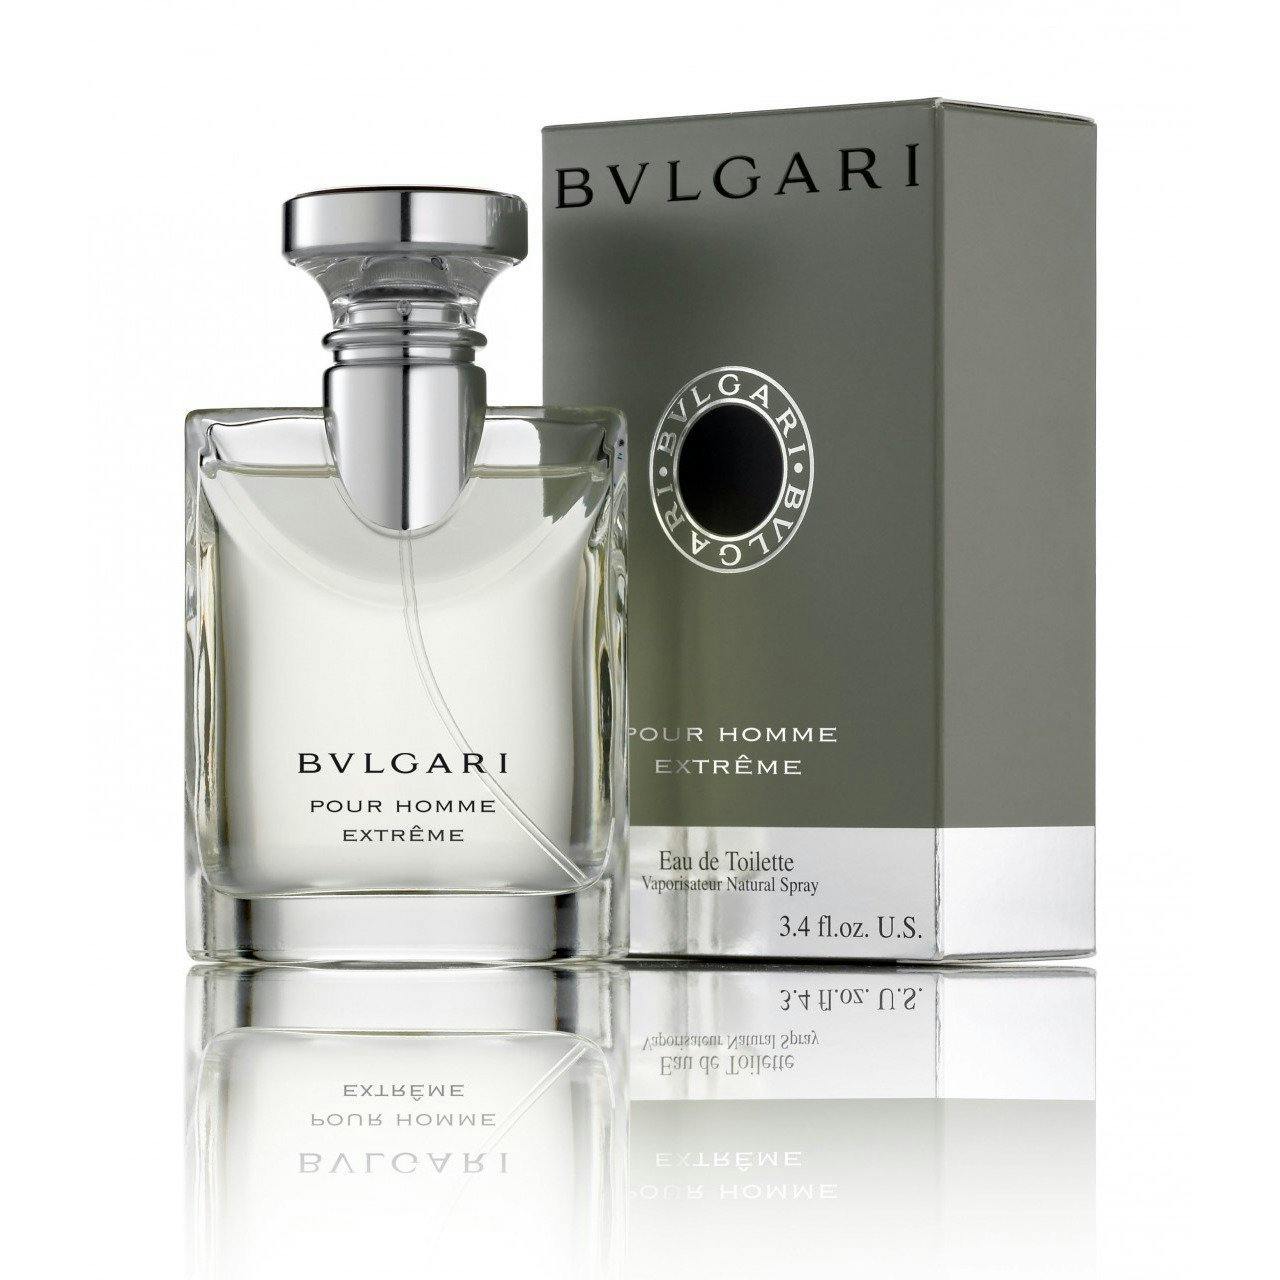 bvlgari perfume price ph